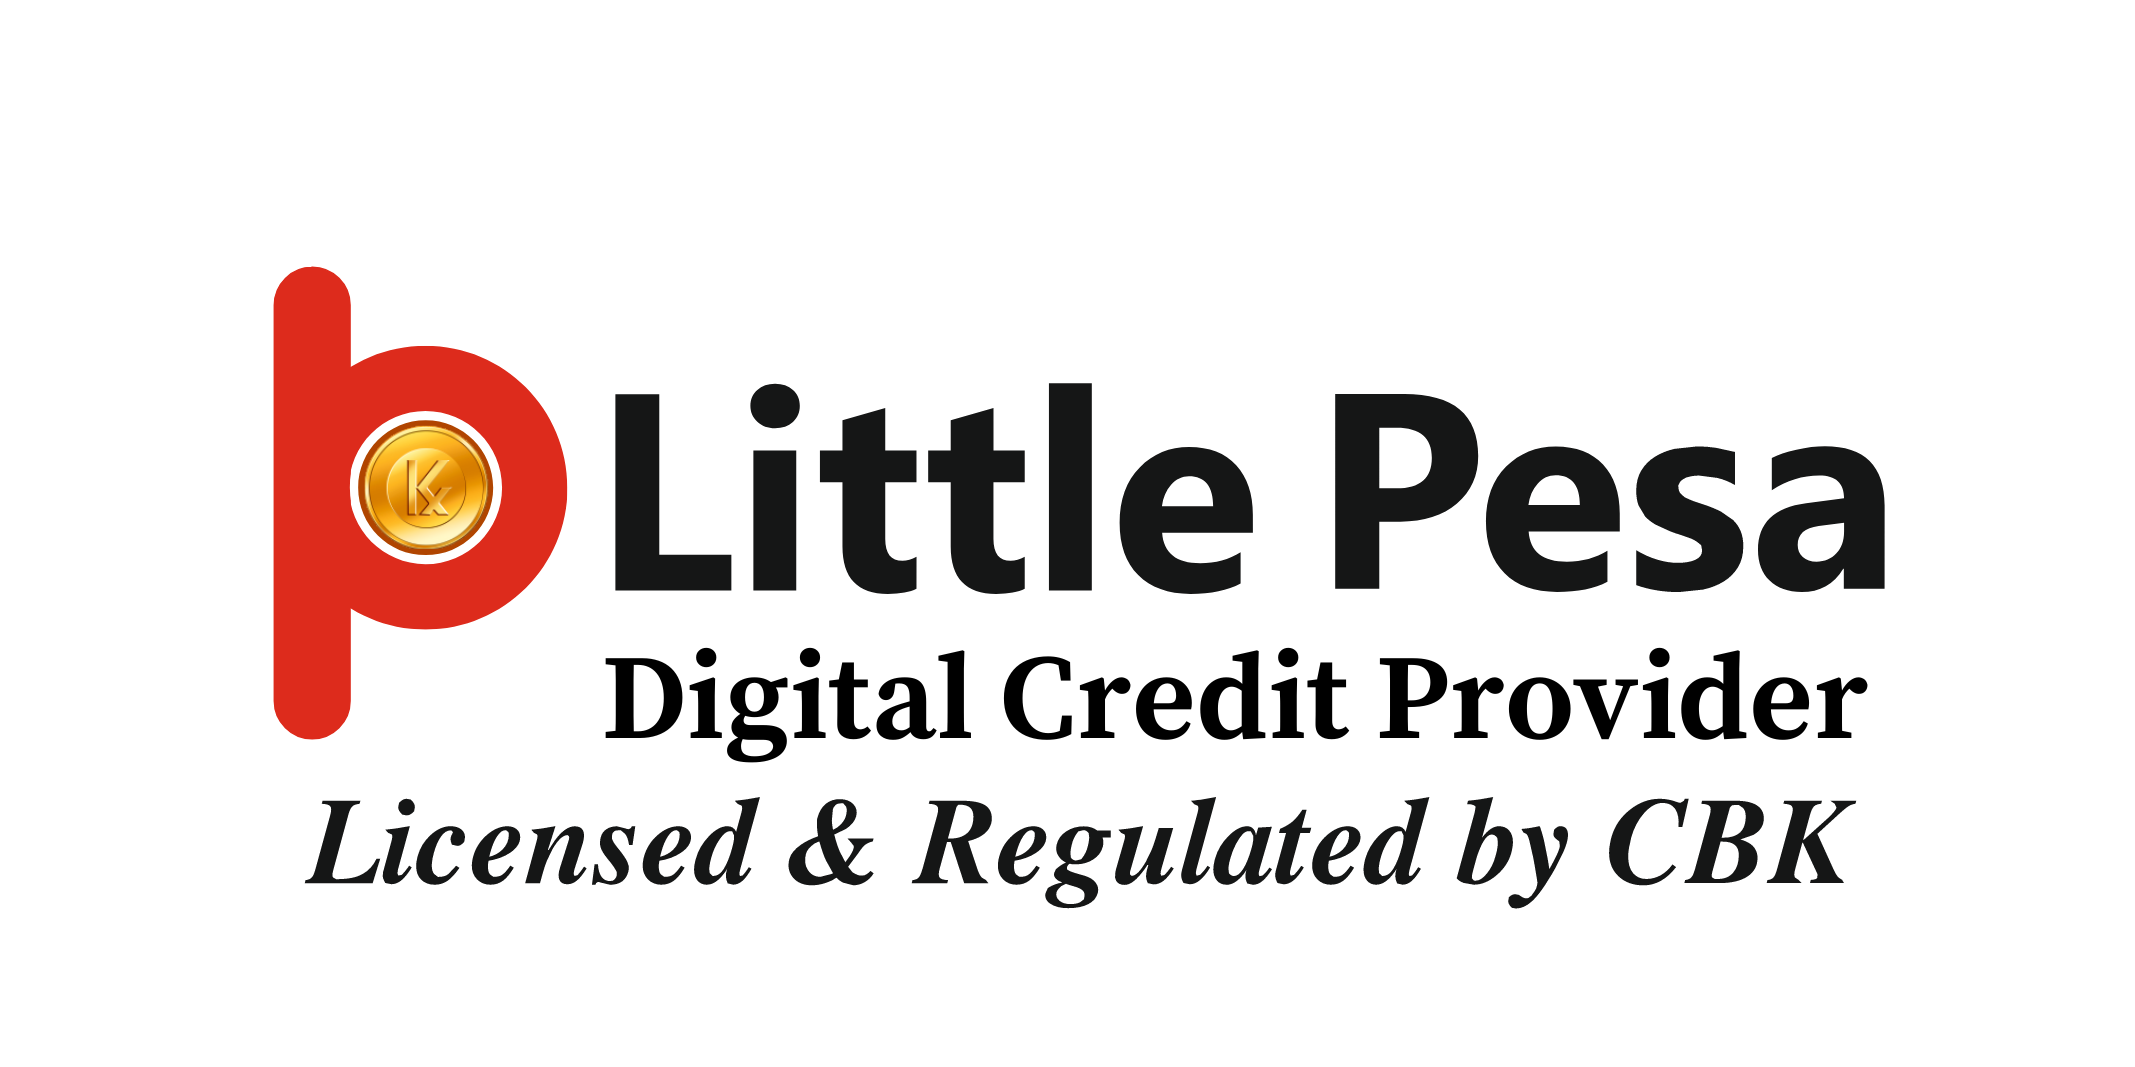 LittlePesa Logo